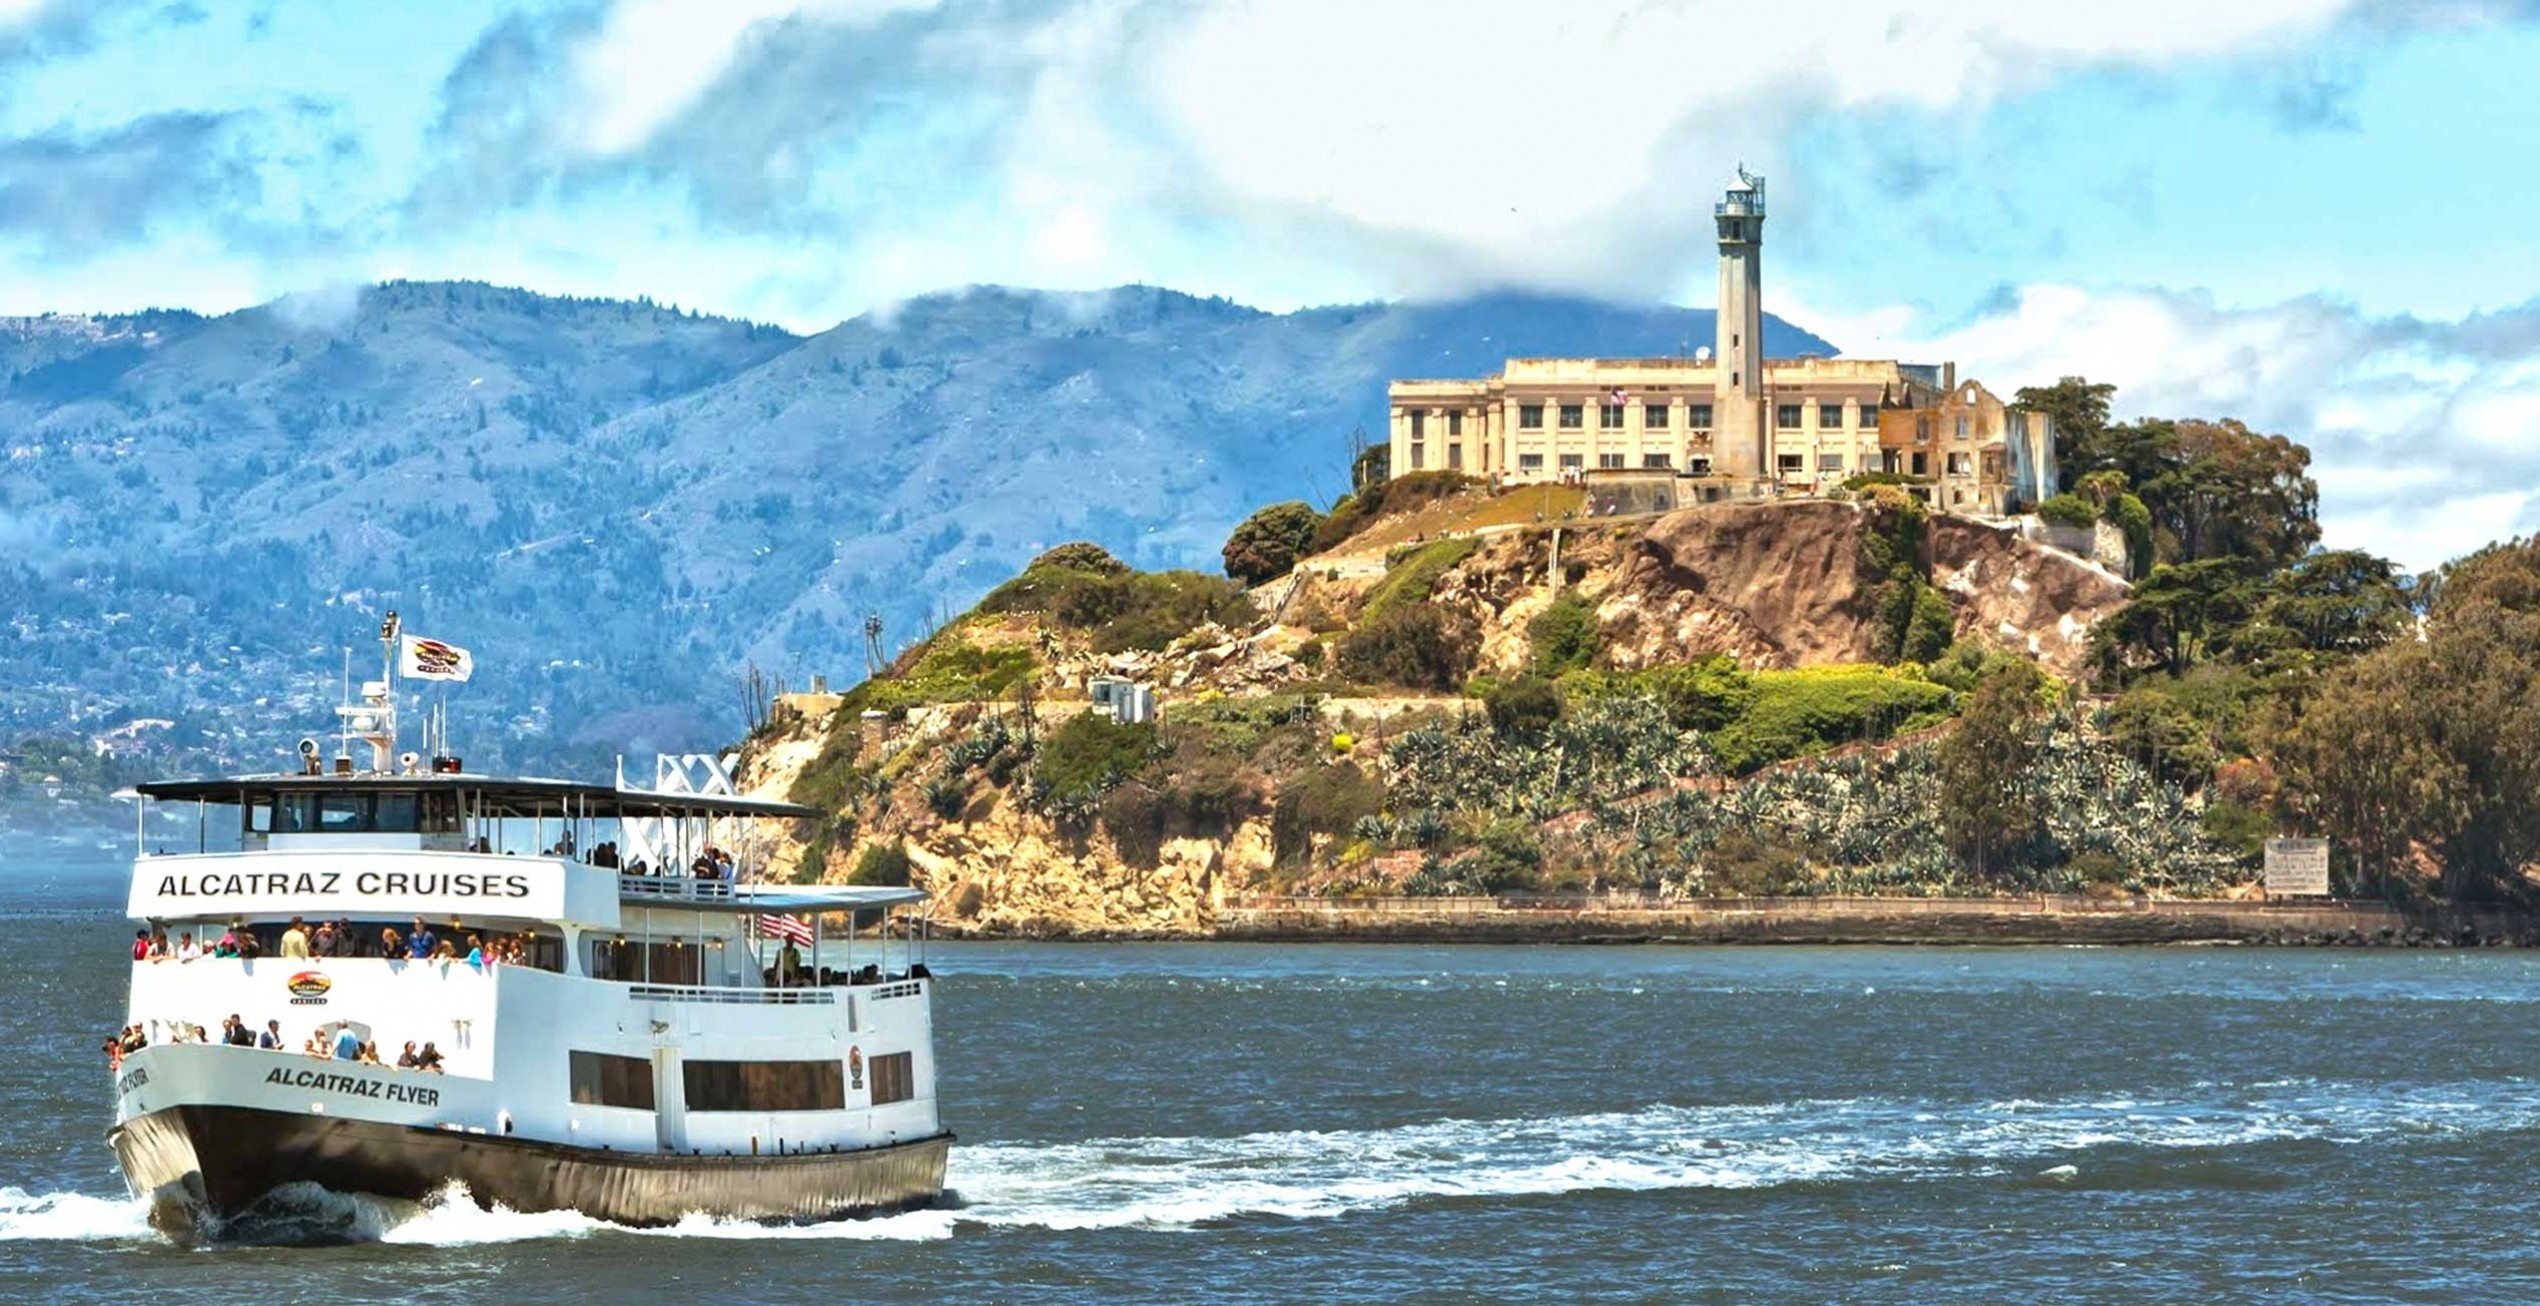 The Alcatraz Island Experience - Alcatraz Cruises